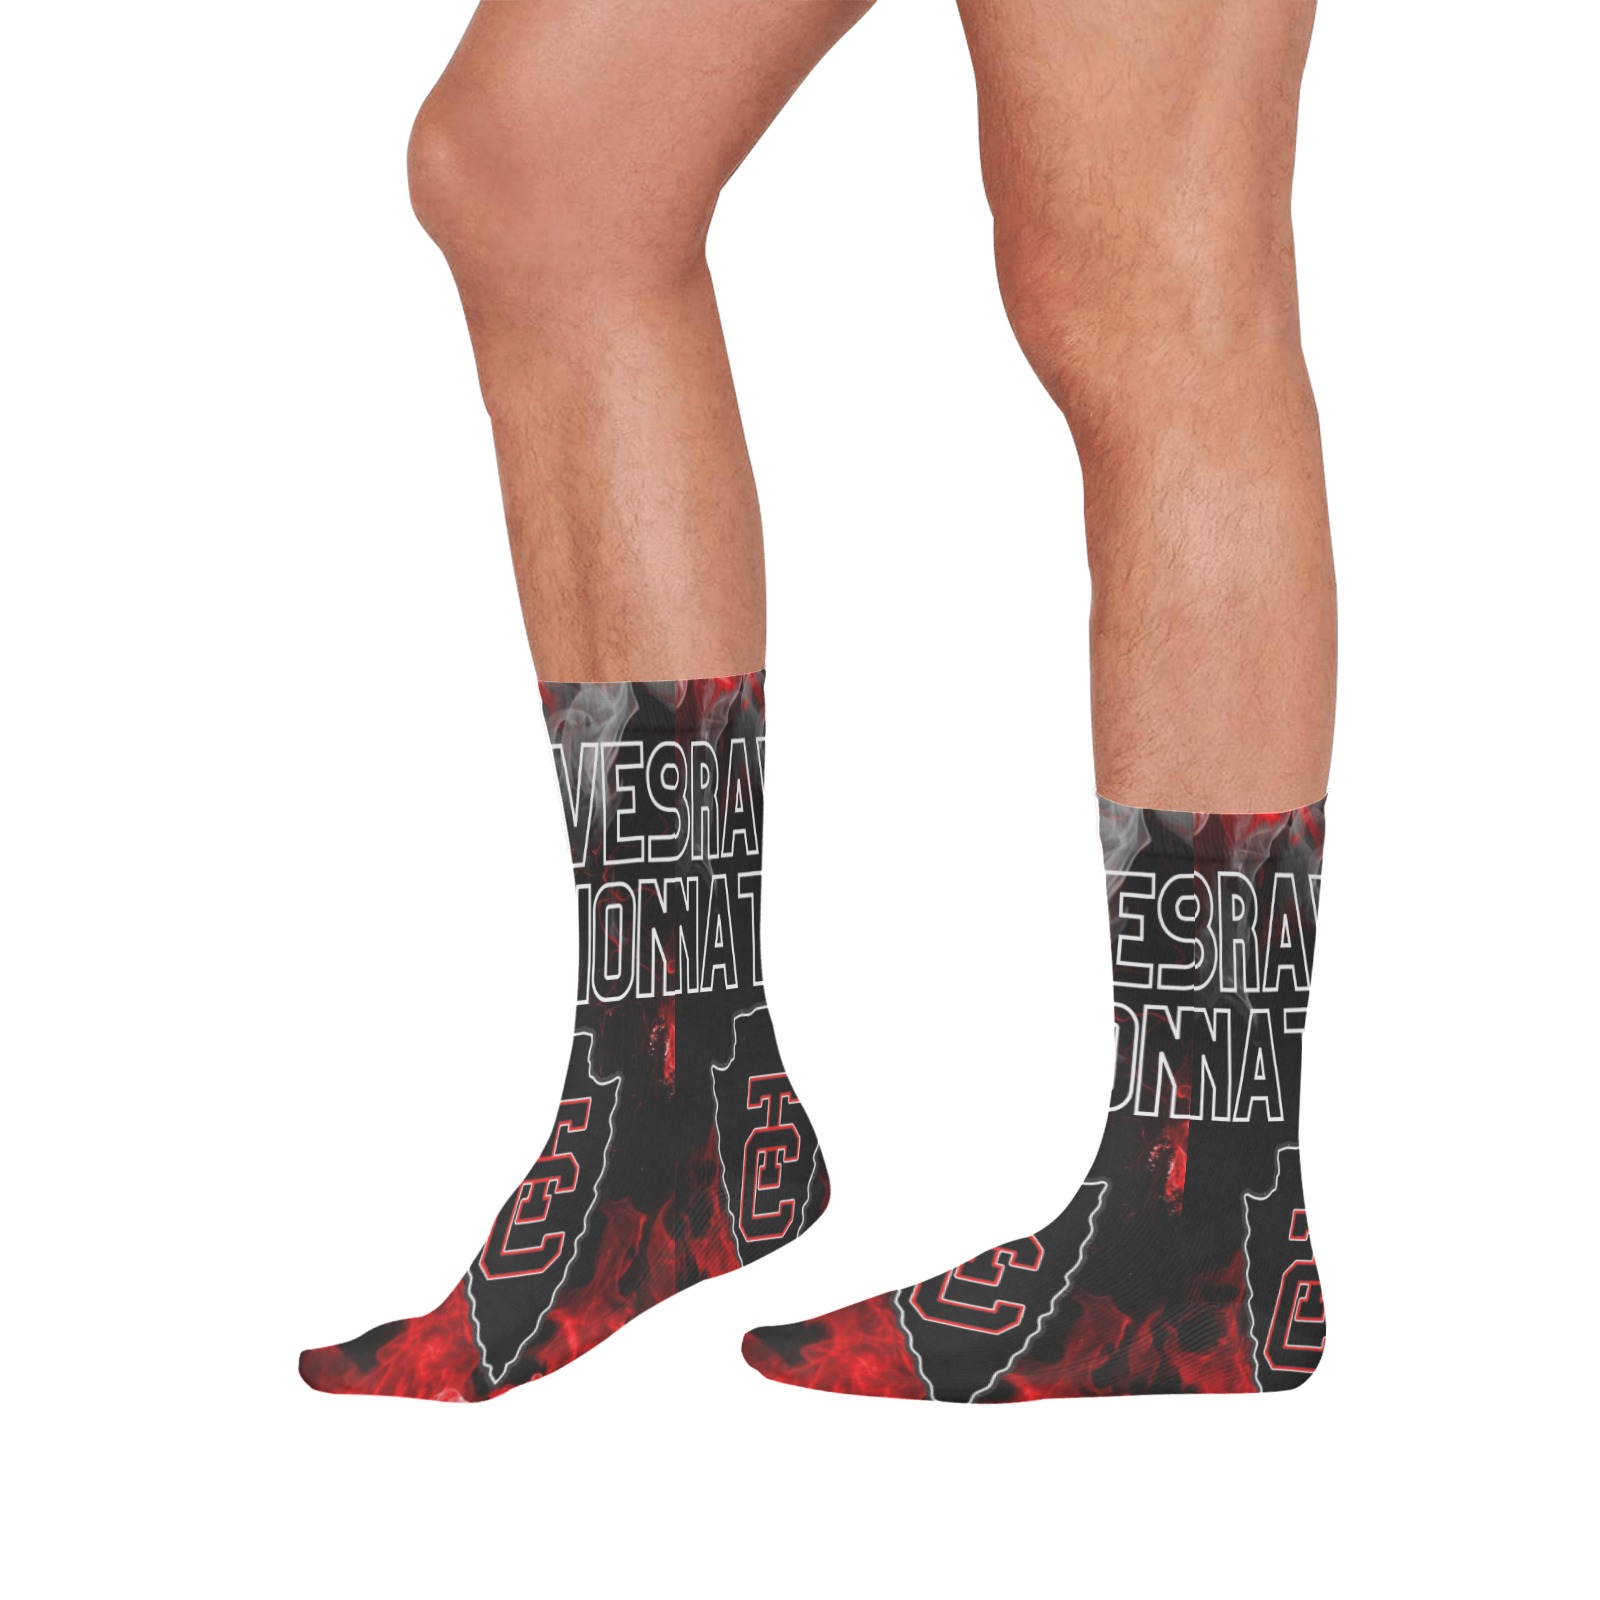 Braves Nation All Over Print Socks for Men